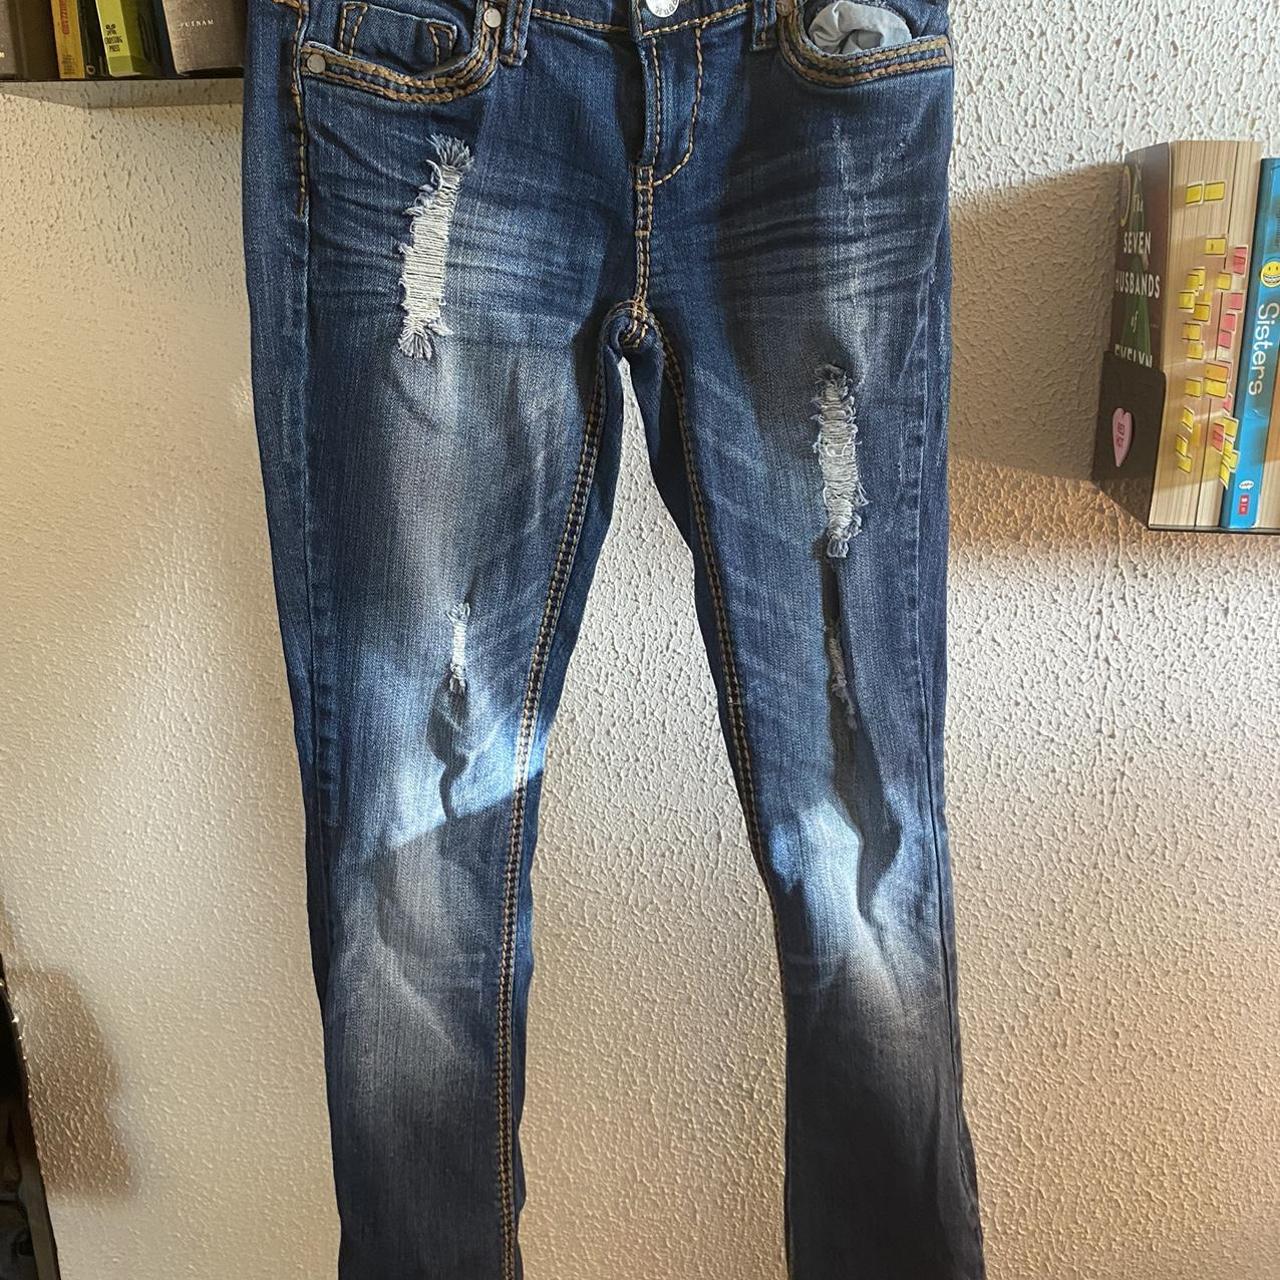 Vintage distressed 2000s mudd jeans with brown... - Depop